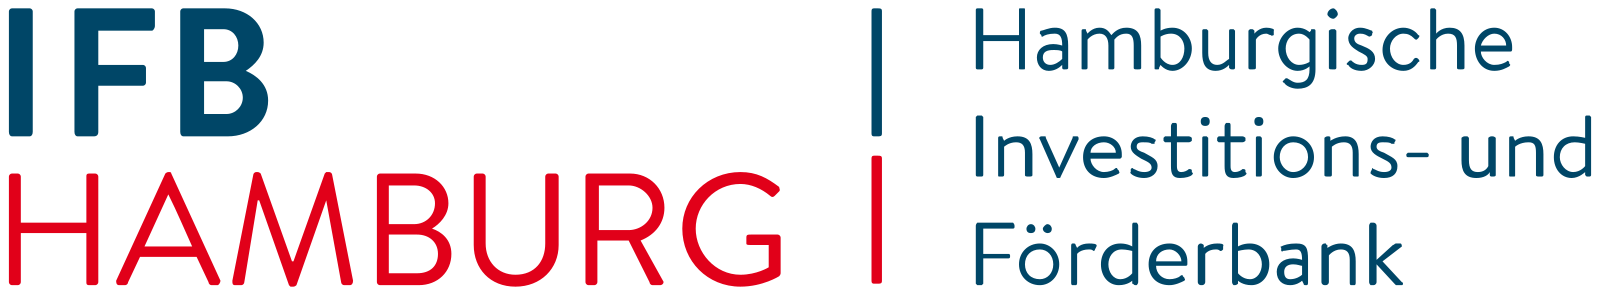 Logo-Hamburgische Investitions- und Förderbank (IFB)